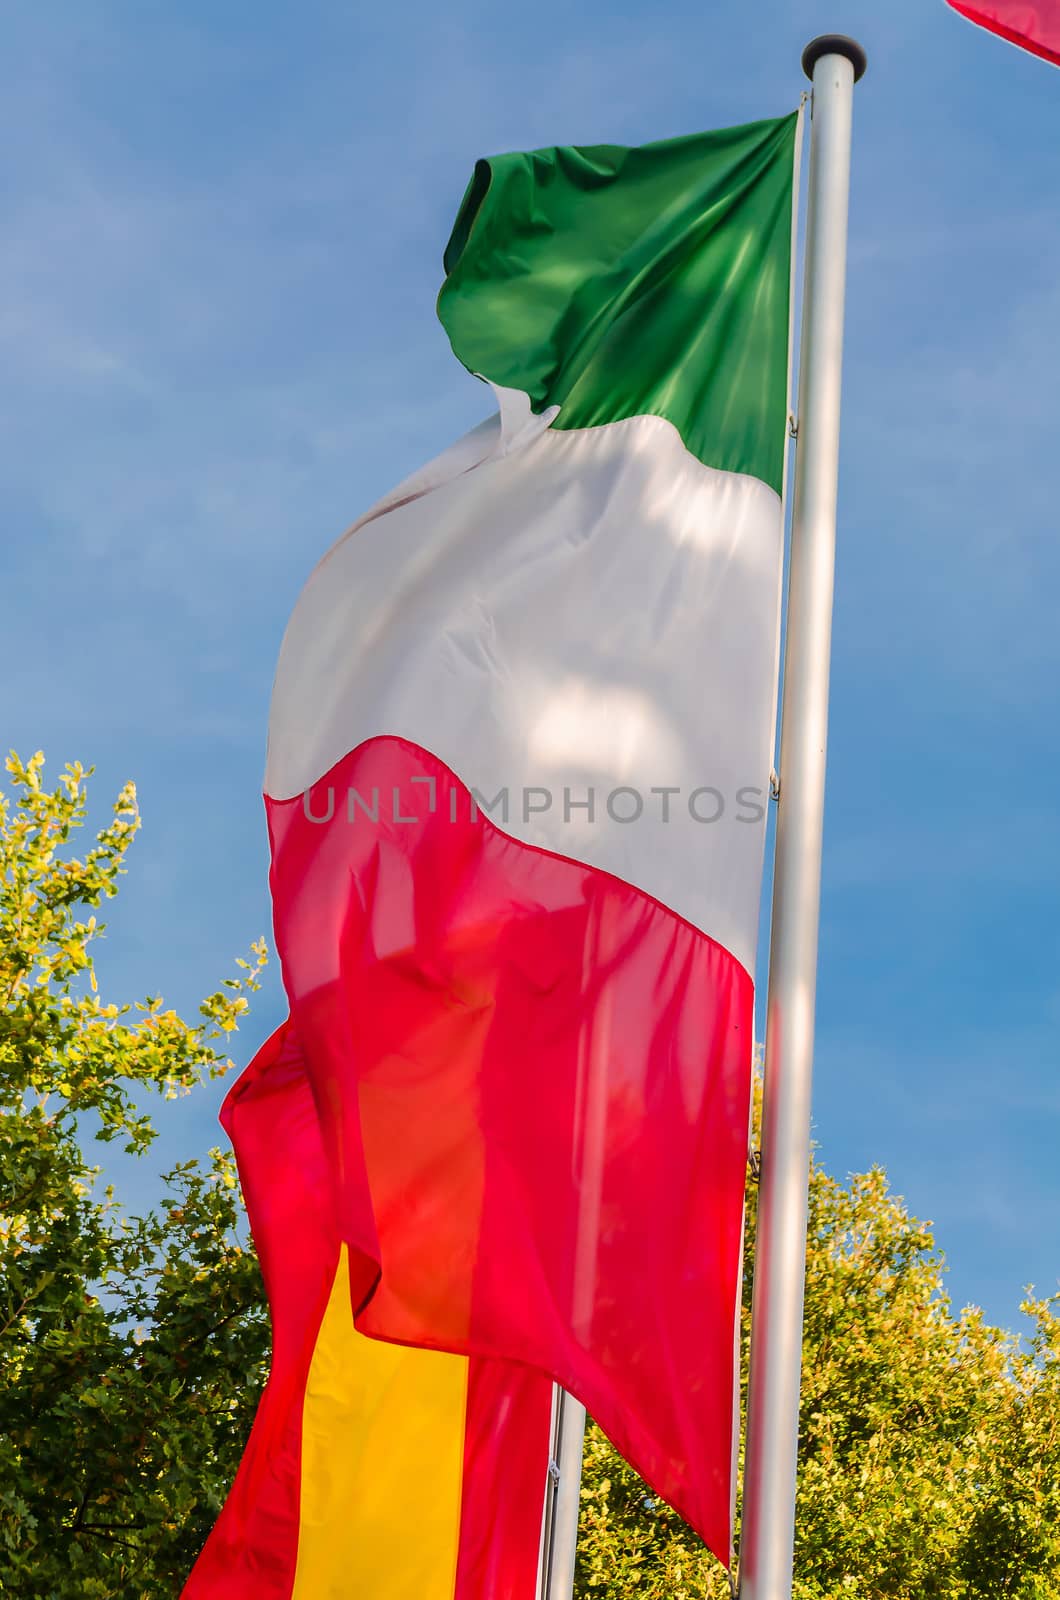 Italian flag on a flag pole waving in the wind against blue sky